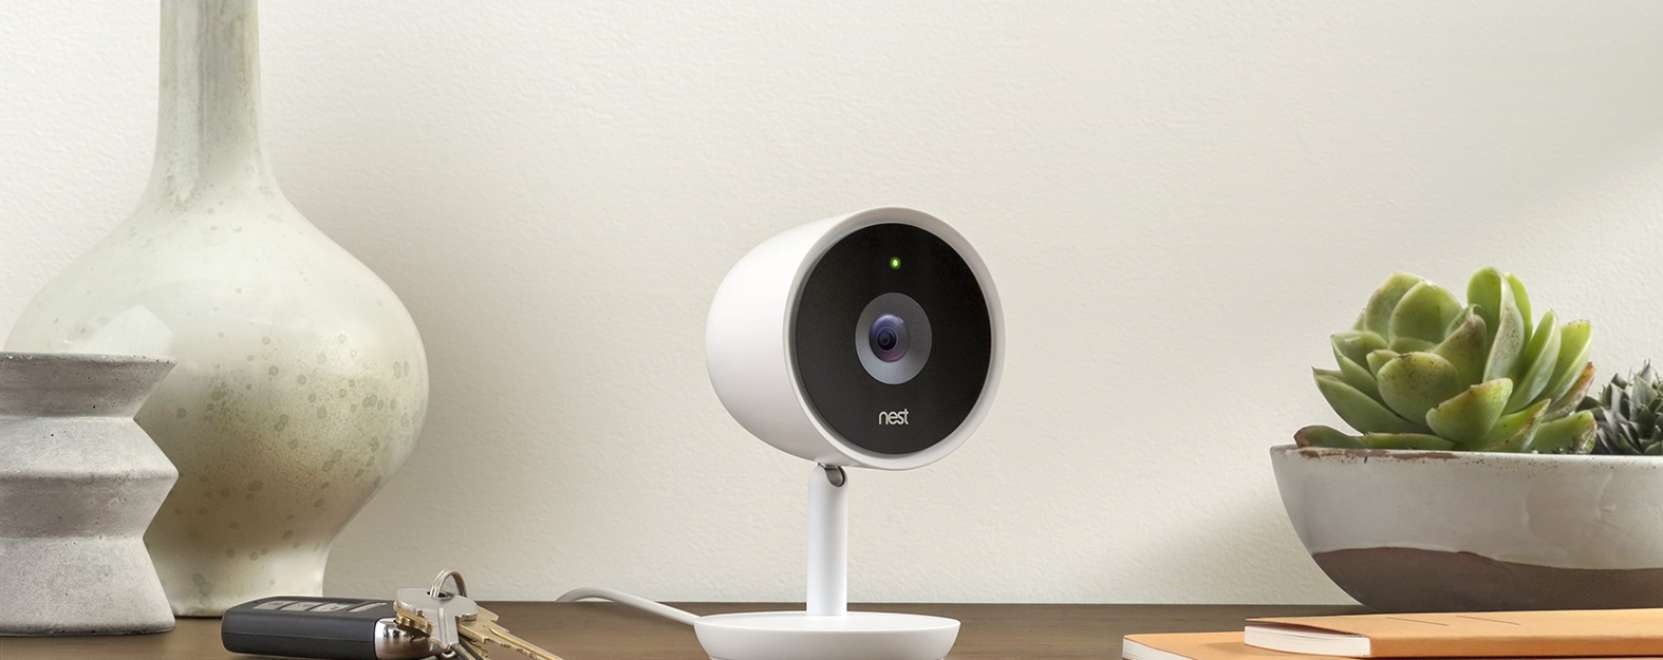 Még többet tud a Nest új kamerája